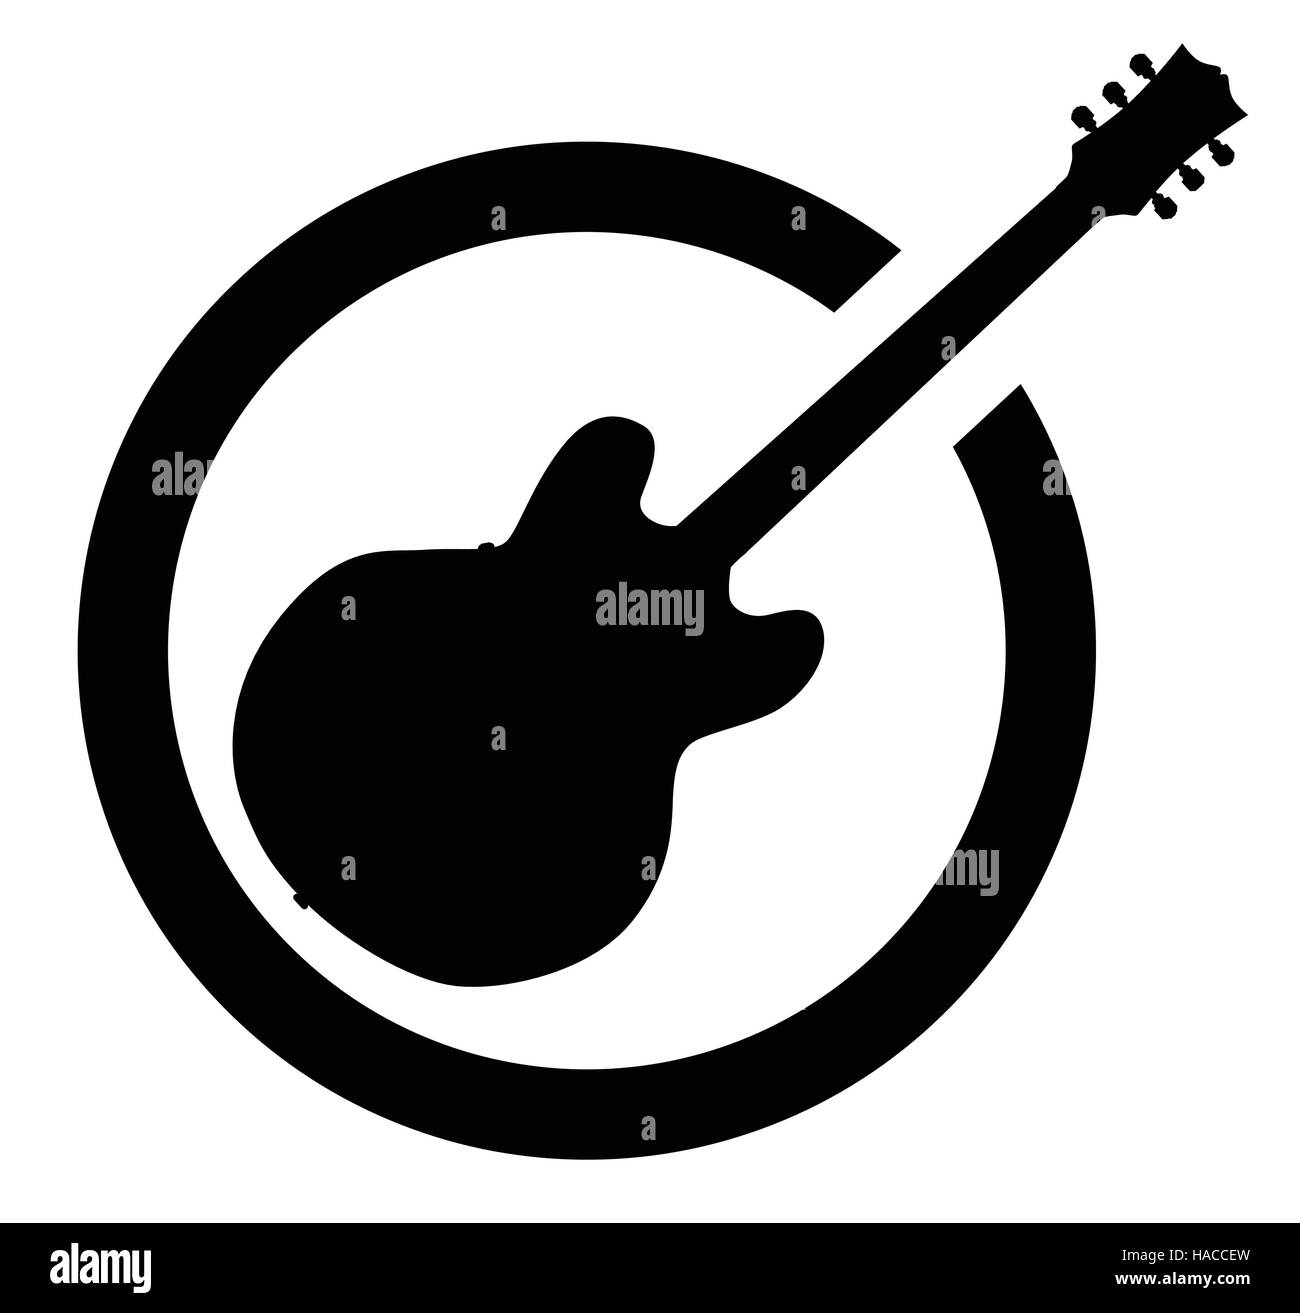 La definitiva rock and roll guitar come gomma timbro di inchiostro in bianco e nero, isolato su uno sfondo bianco. Illustrazione Vettoriale